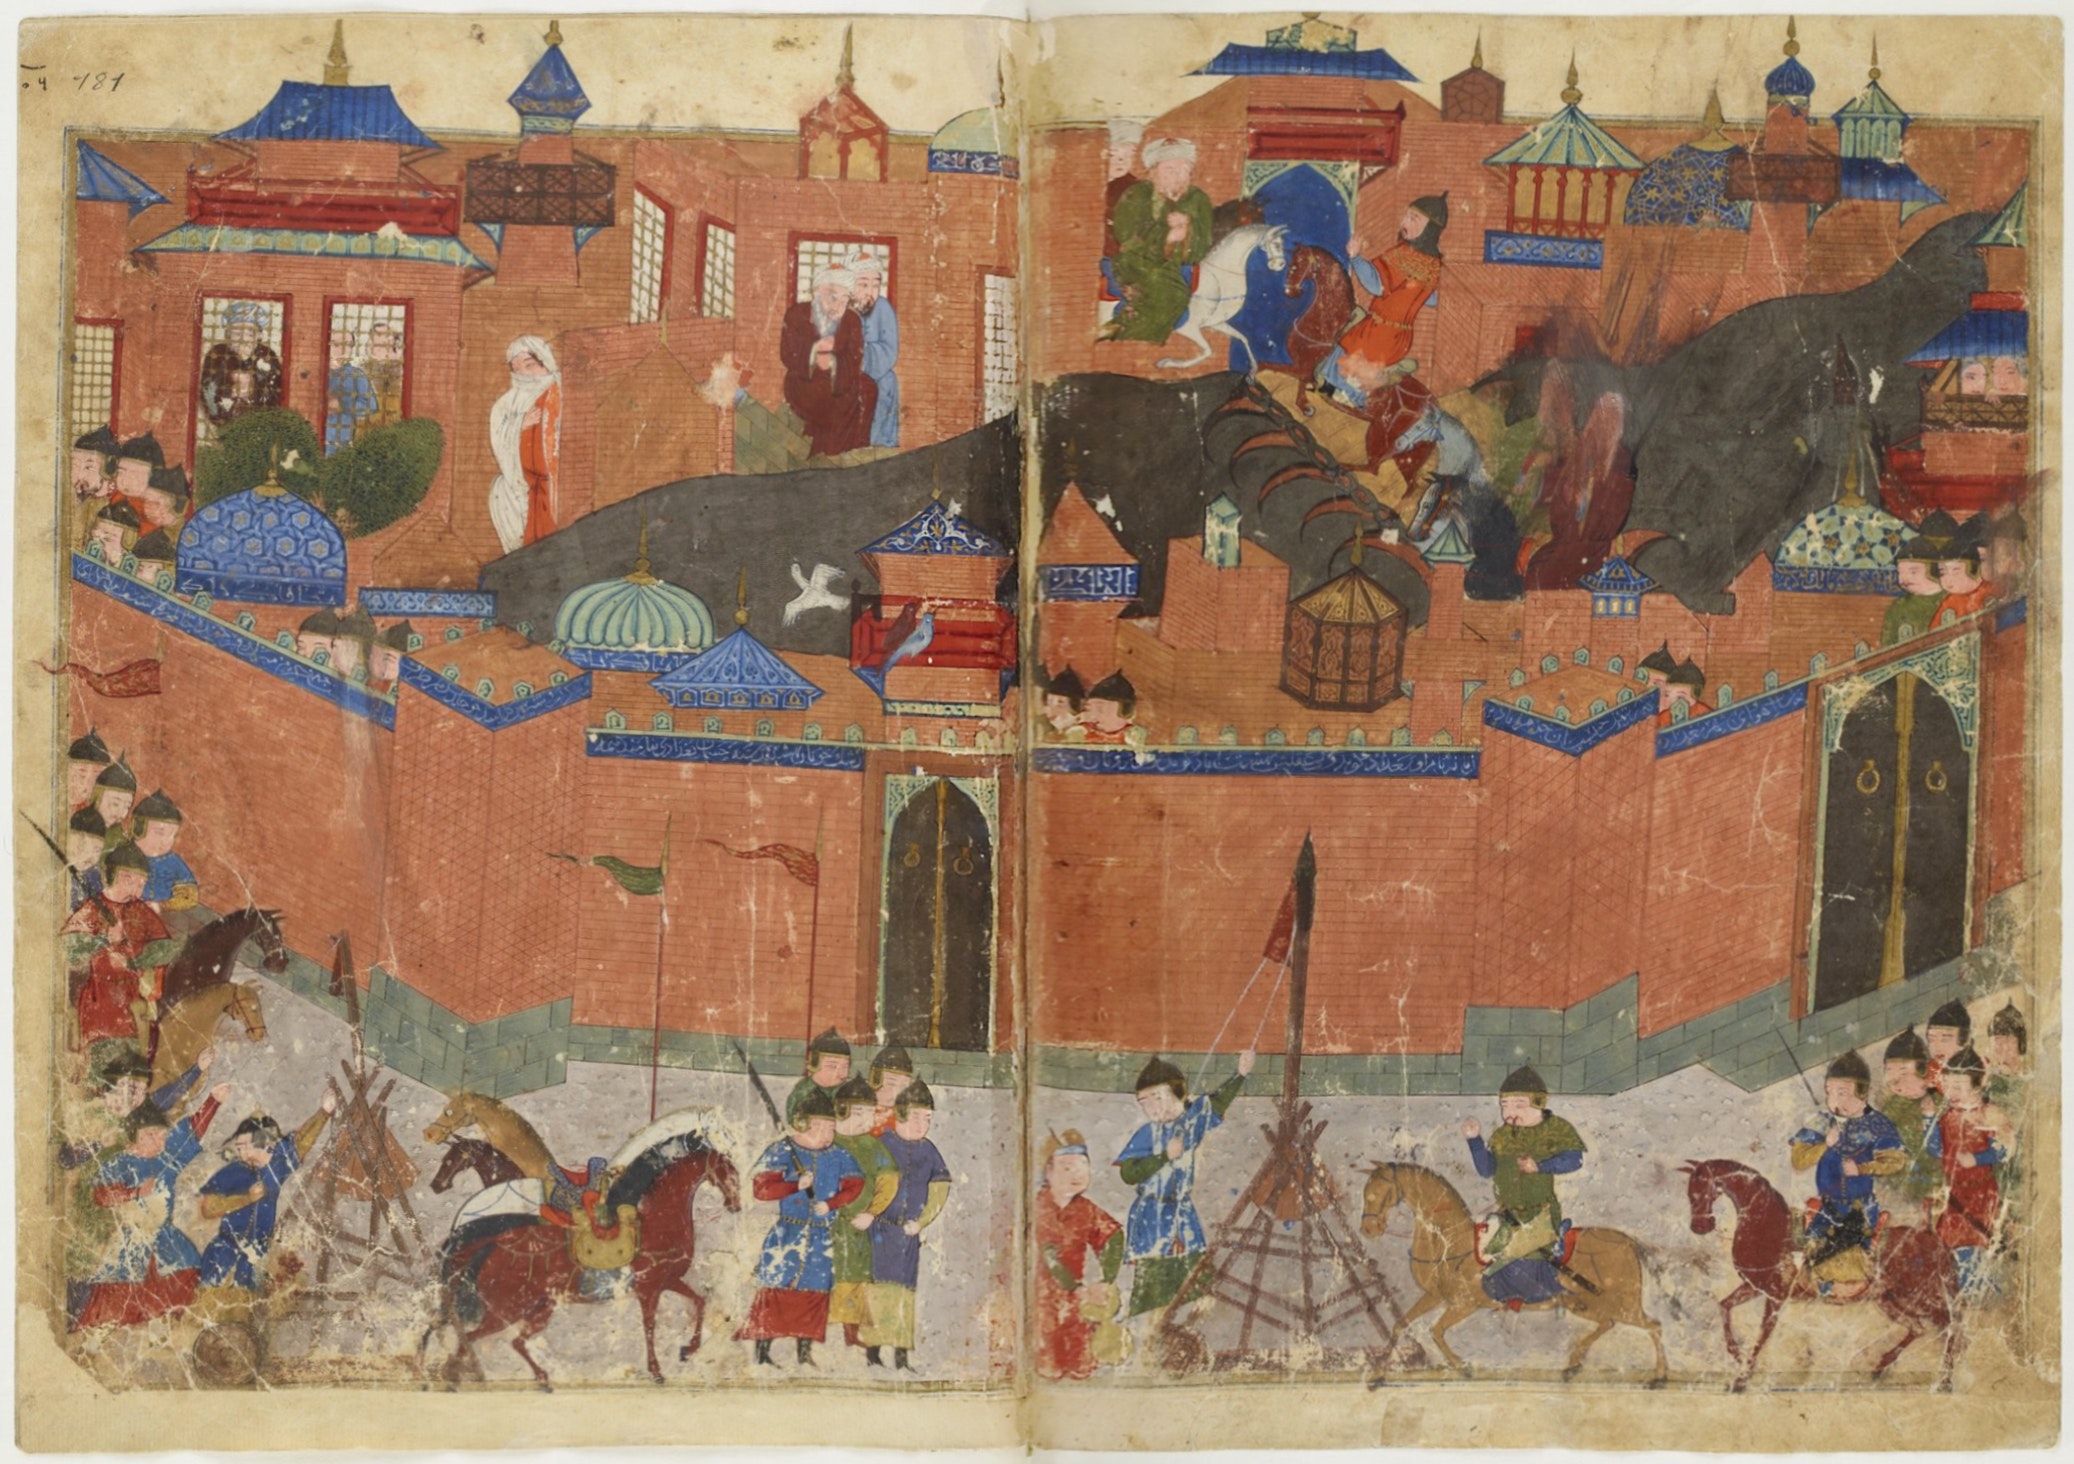 Hé lộ về ‘Thung lũng Silicon’ của thế giới Hồi giáo thời Trung cổ